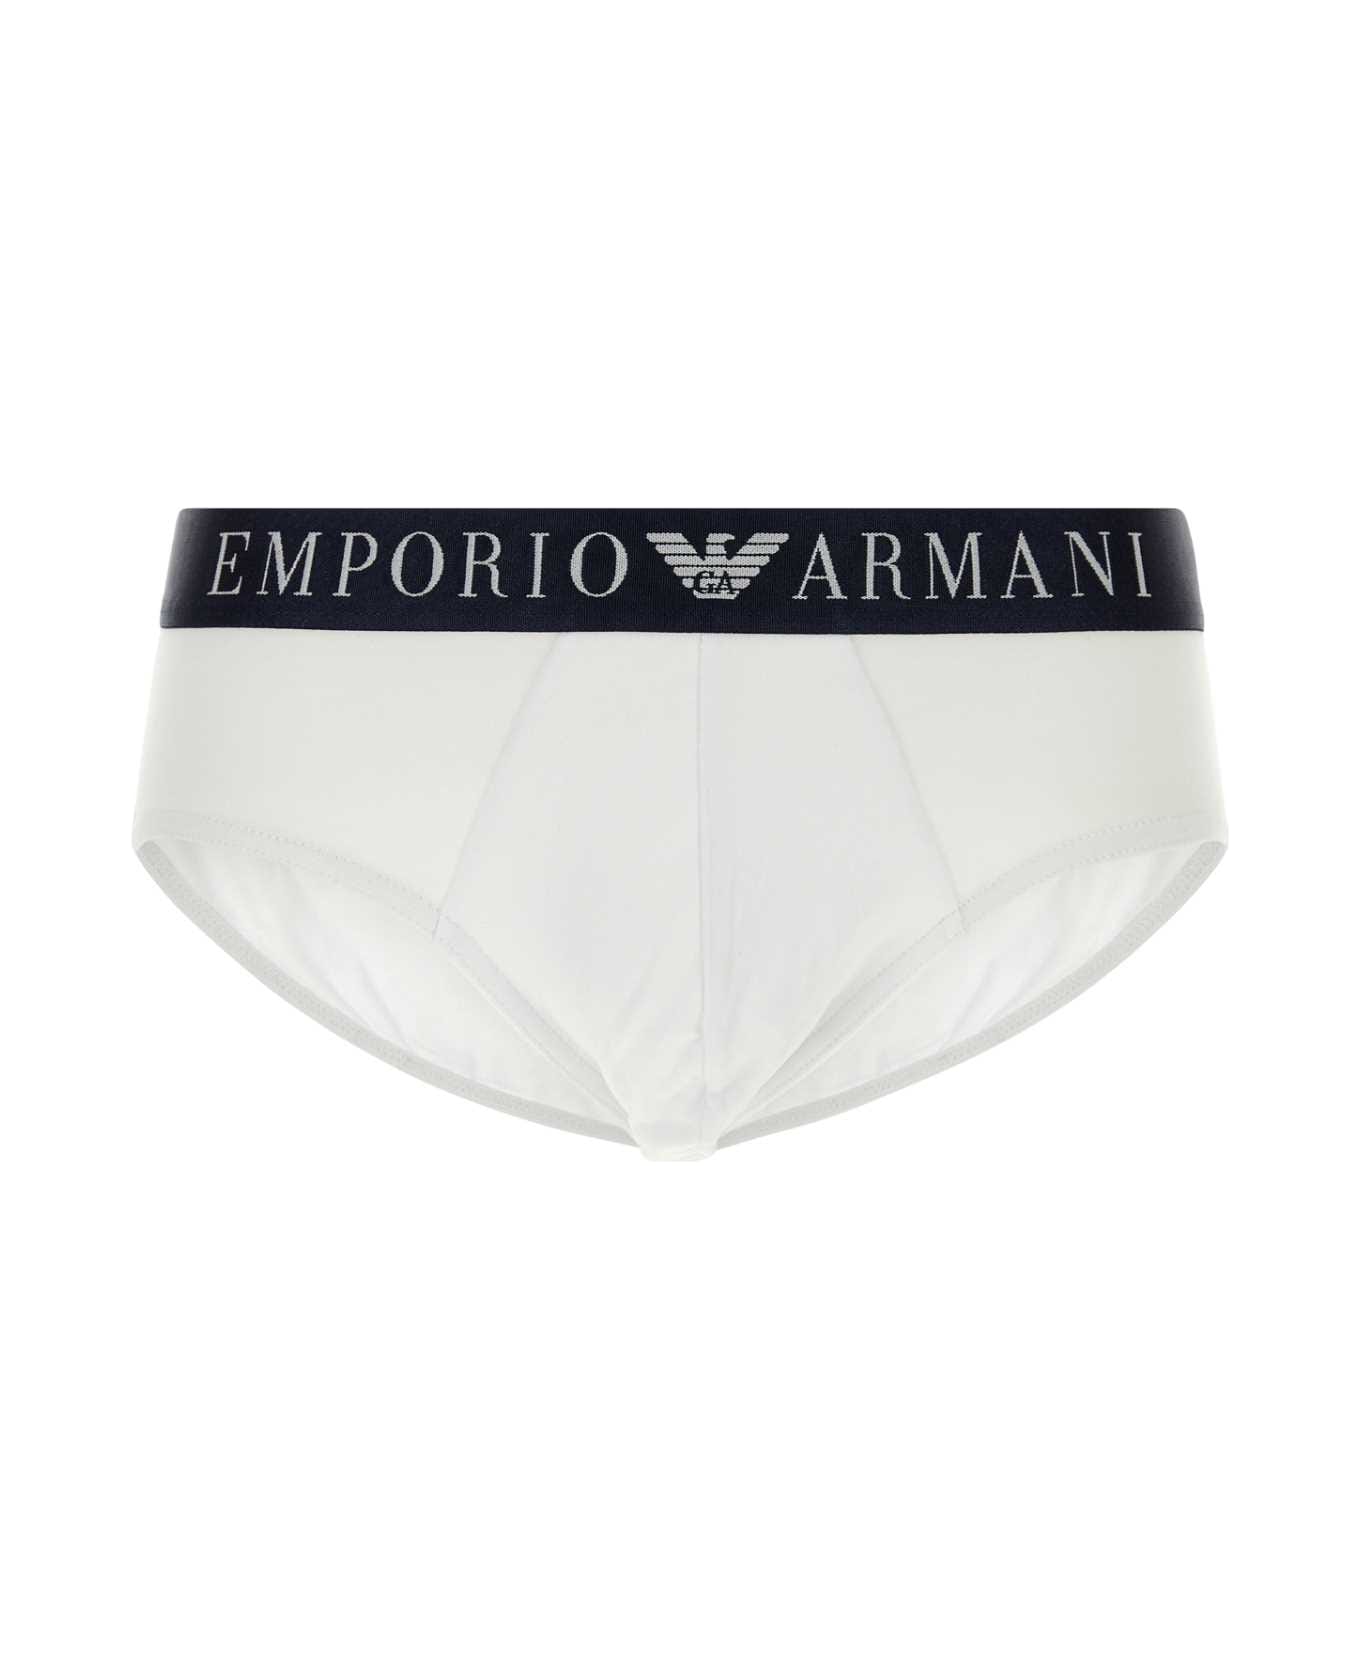 Emporio Armani White Stretch Cotton Brief - 00010 ショーツ